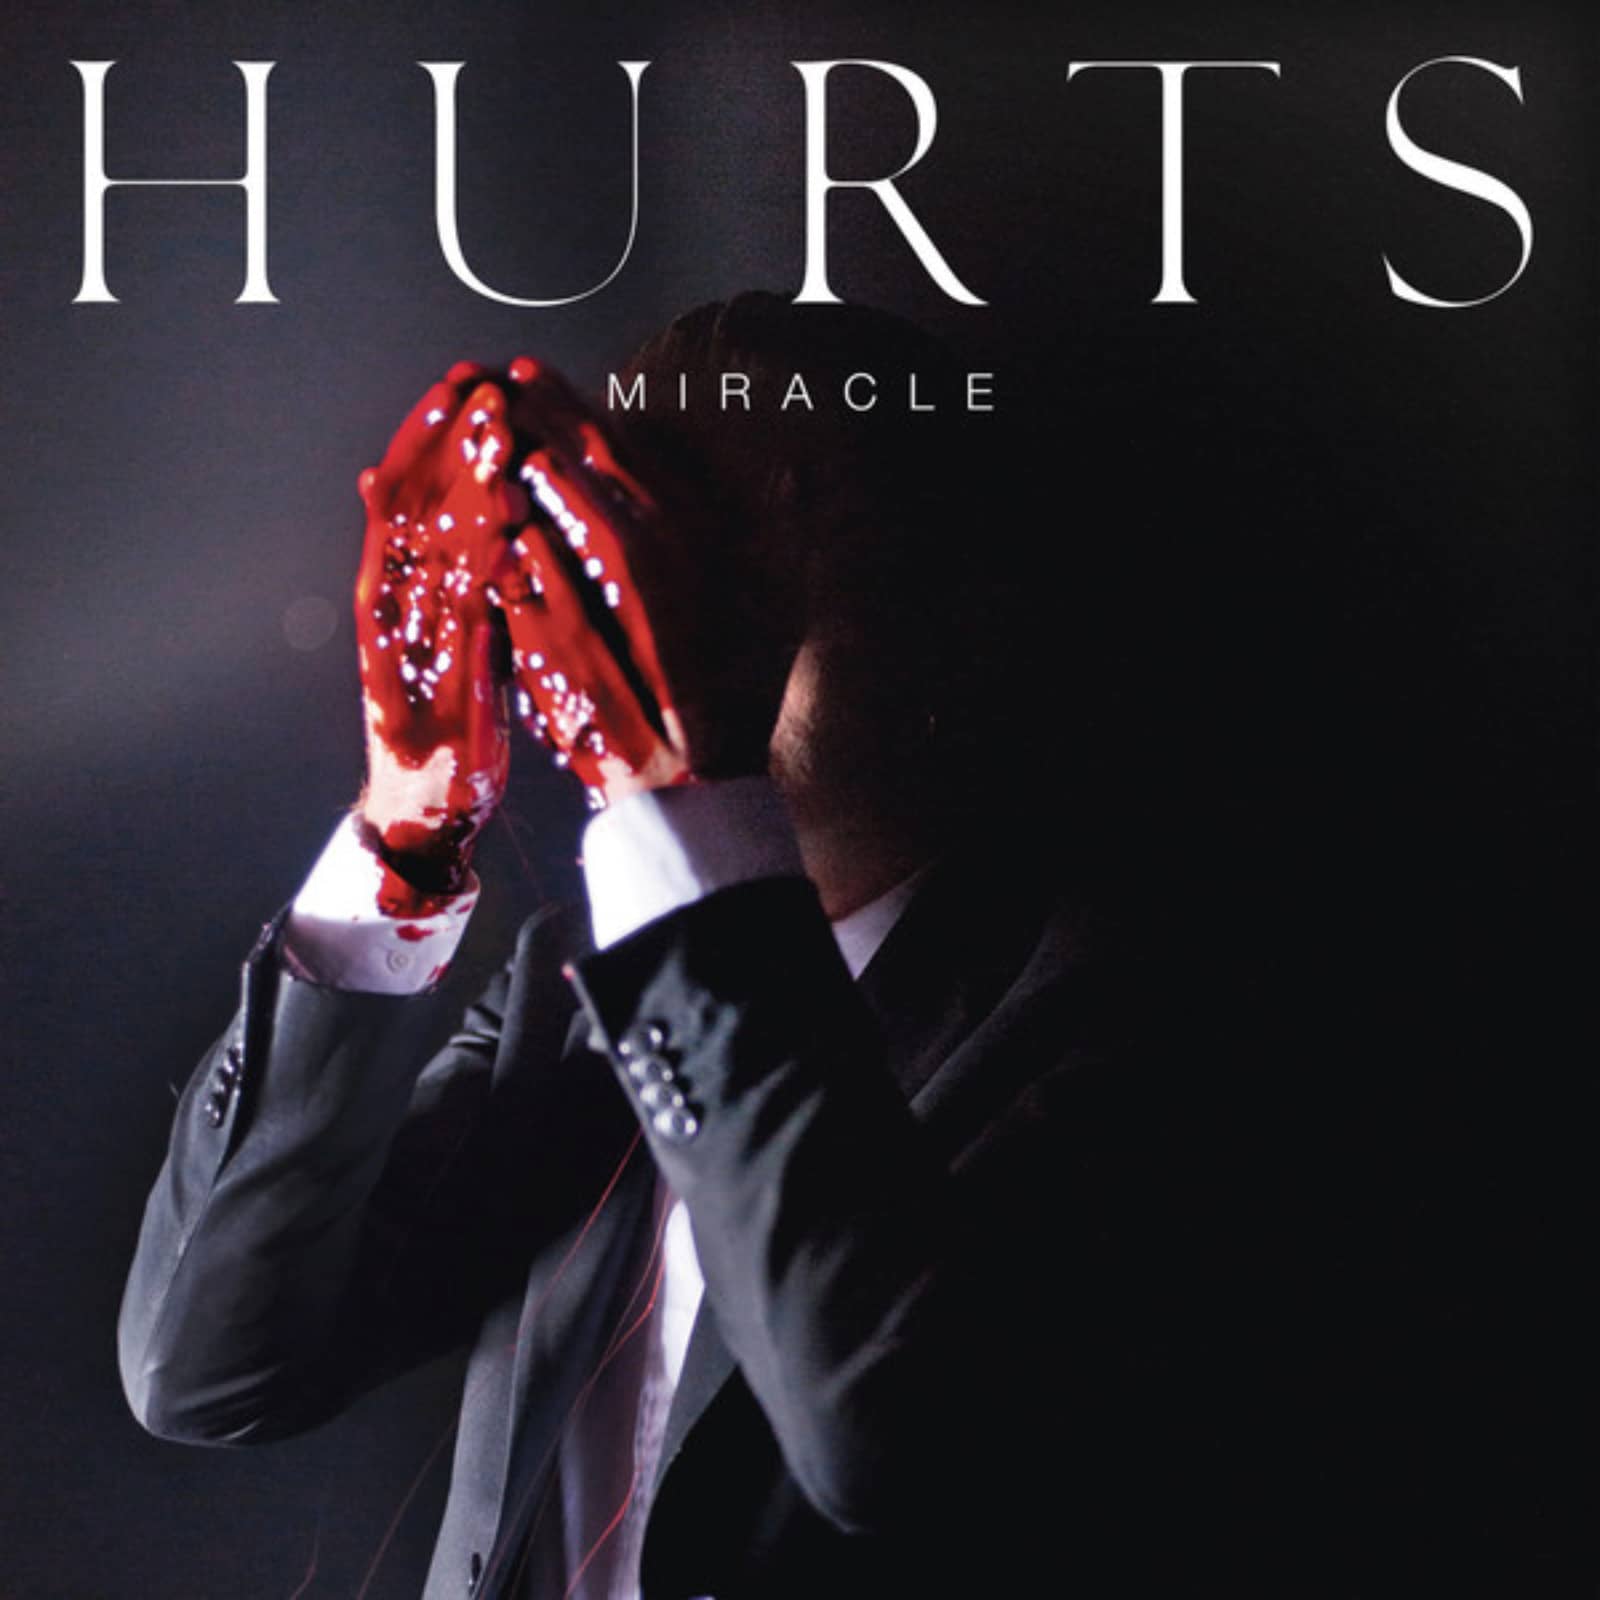 Музыка hurt. Hurts обложки. Hurts обложки альбомов. Hurts Miracle. Группа hurts альбомы.